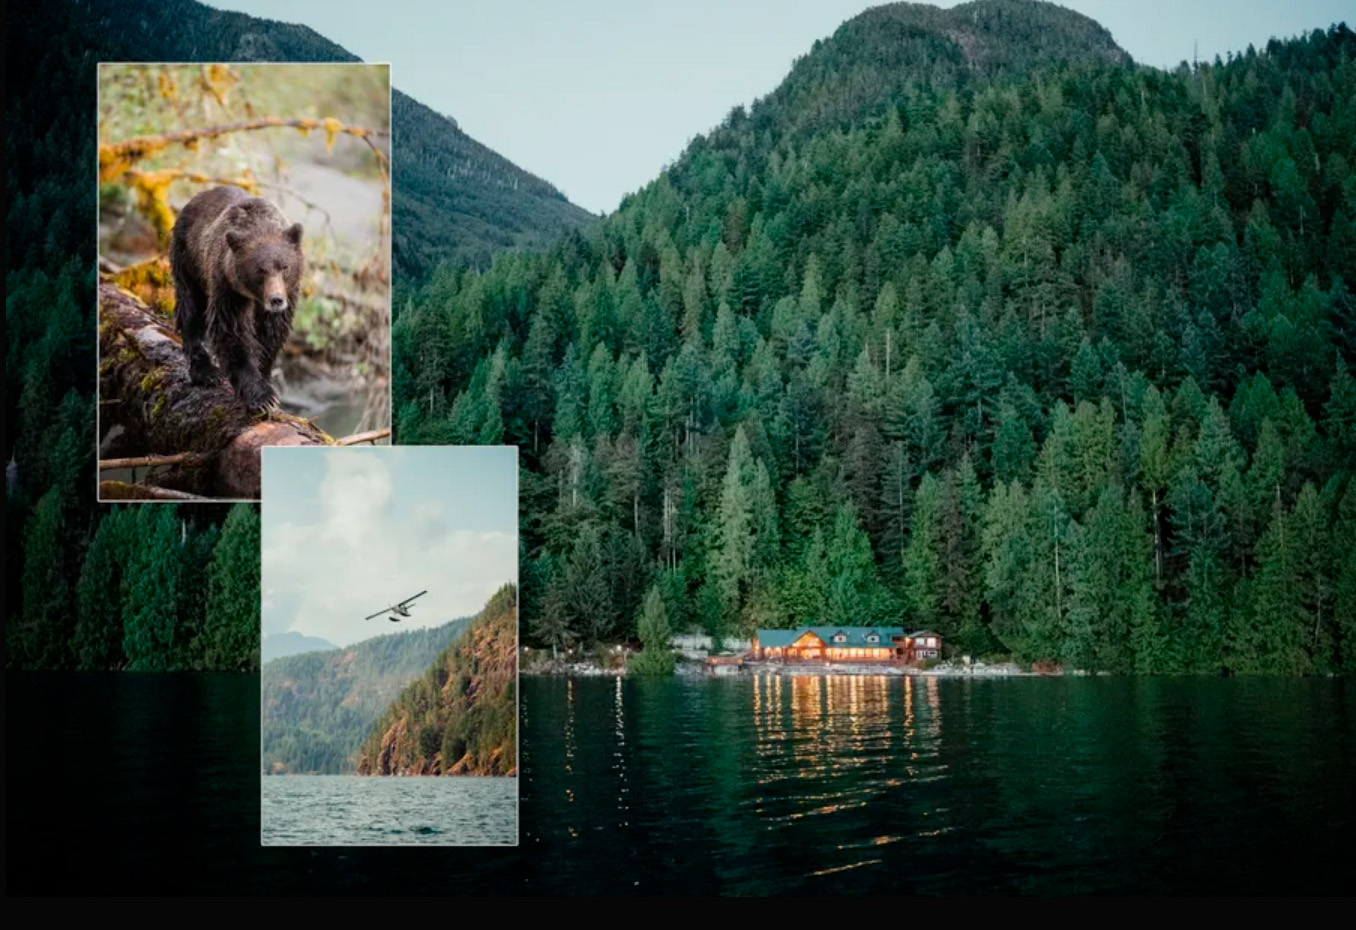 Los viajeros buscan aprender sobre la cultura de las Primeras Naciones de Klahoose y experimentar la fantástica observación de la vida silvestre en el remoto Desolation Sound de la Columbia Británica.